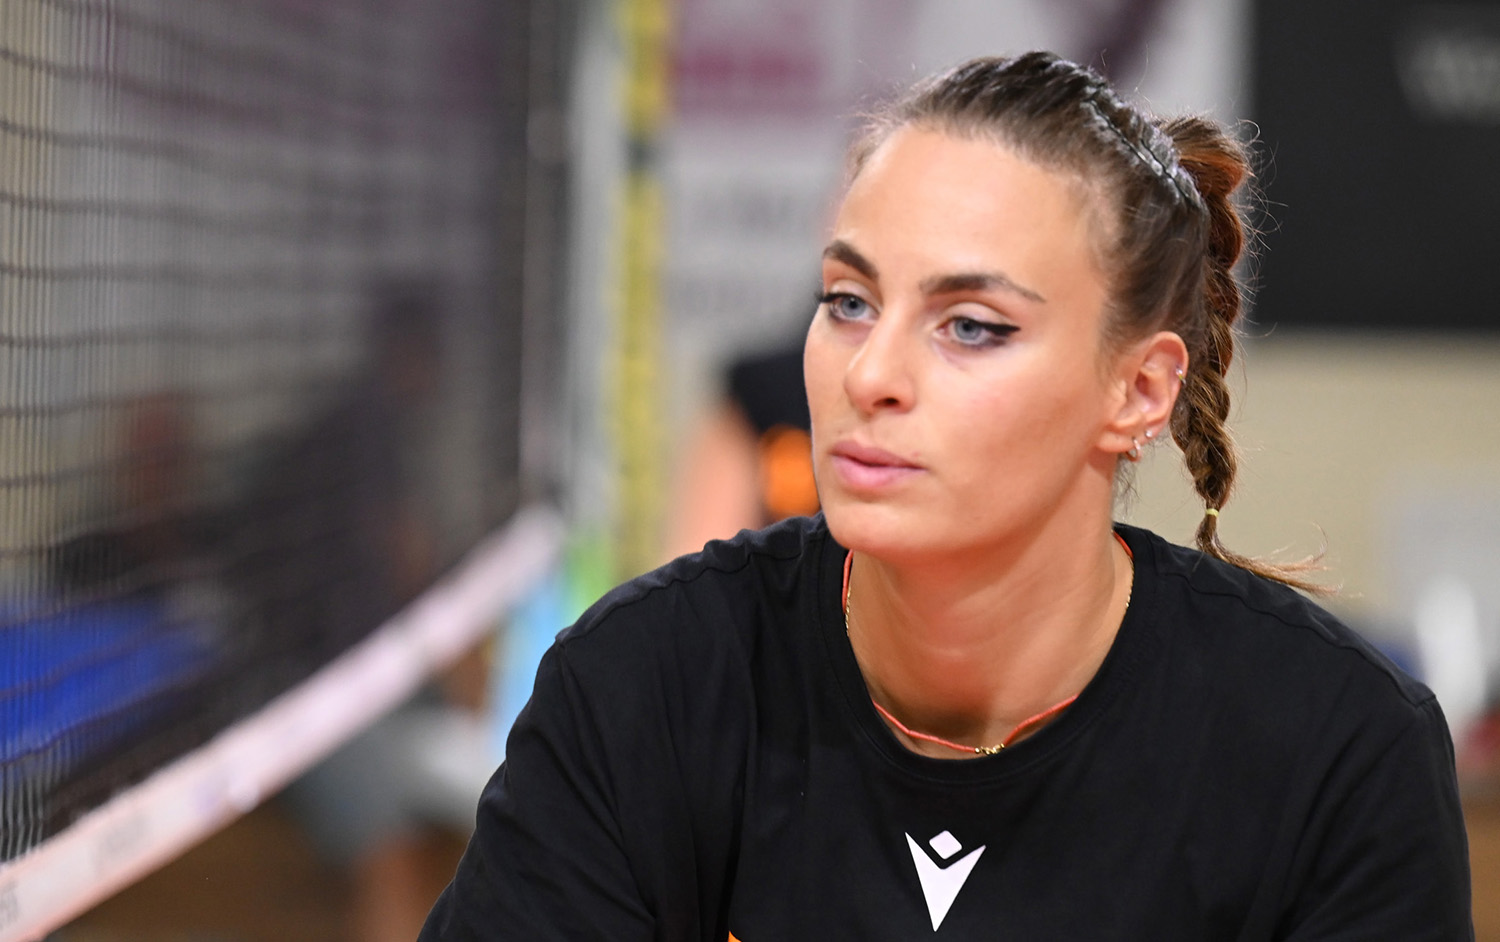 Macerata: Infortunio per Giorgia Quarchioni - Volleyball.it